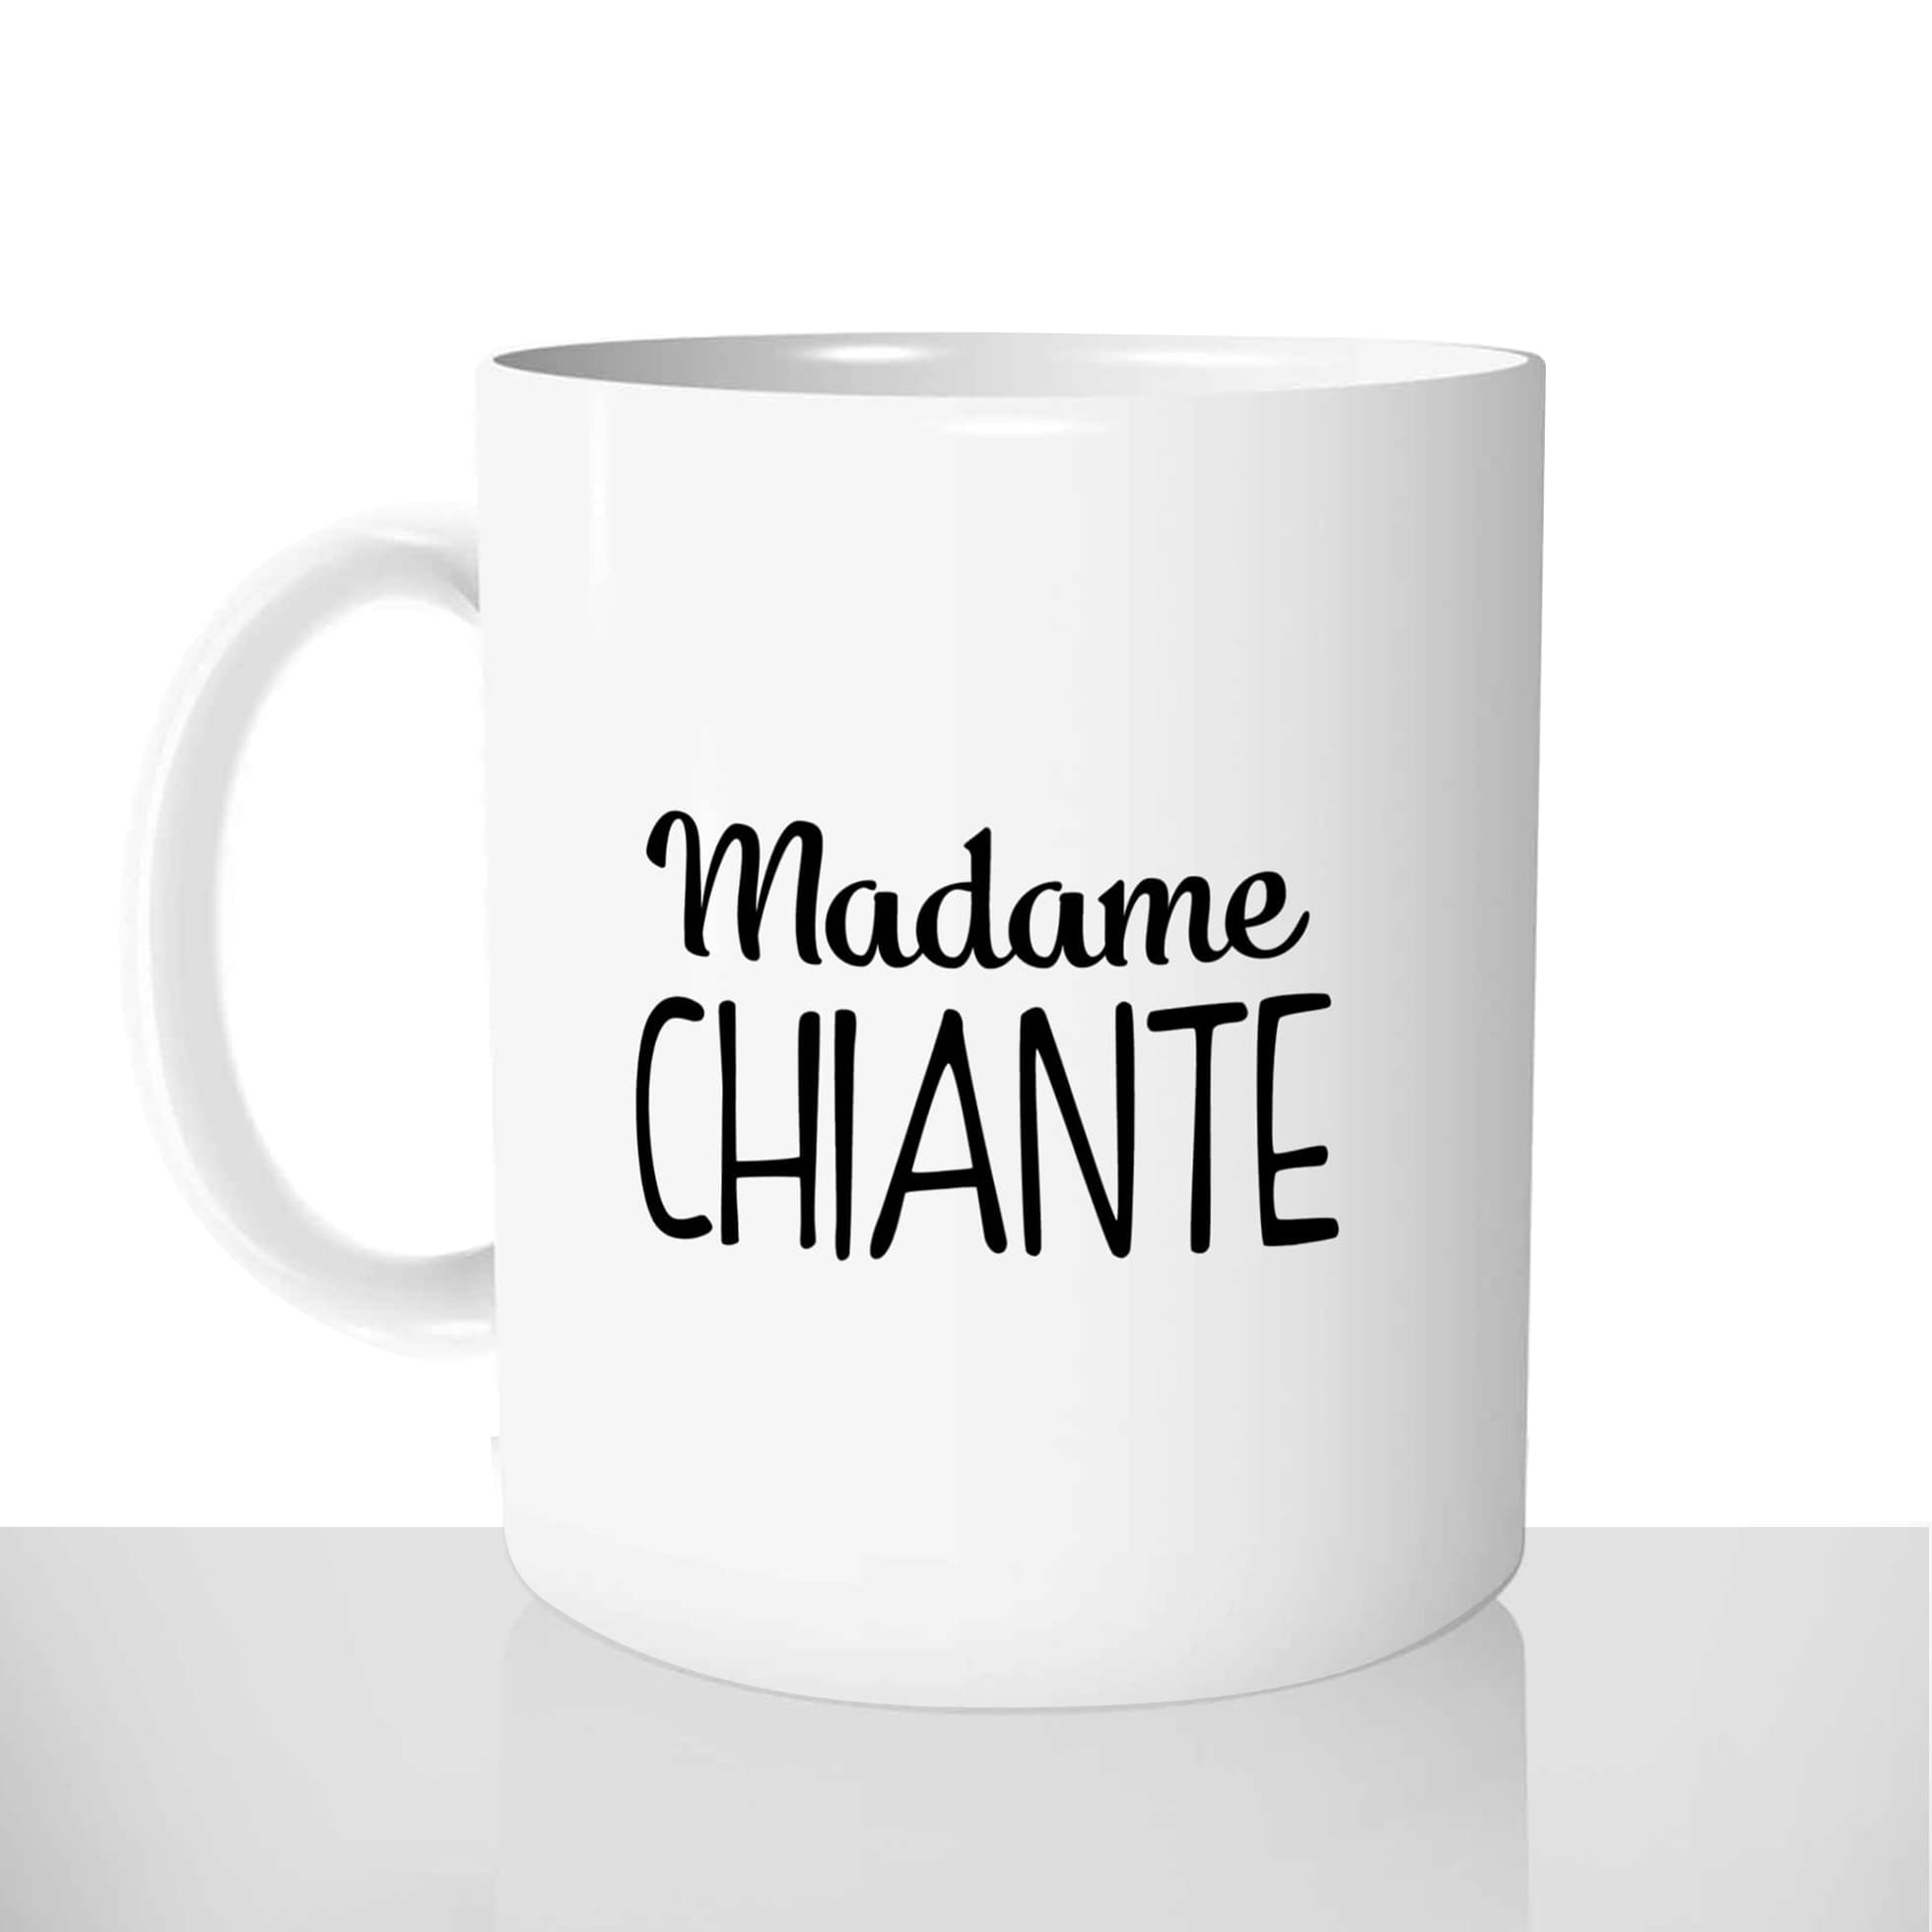 mug classique en céramique 11oz personnalisé personnalisation photo madame chiante défaut personnalisable offrir cadeau chou